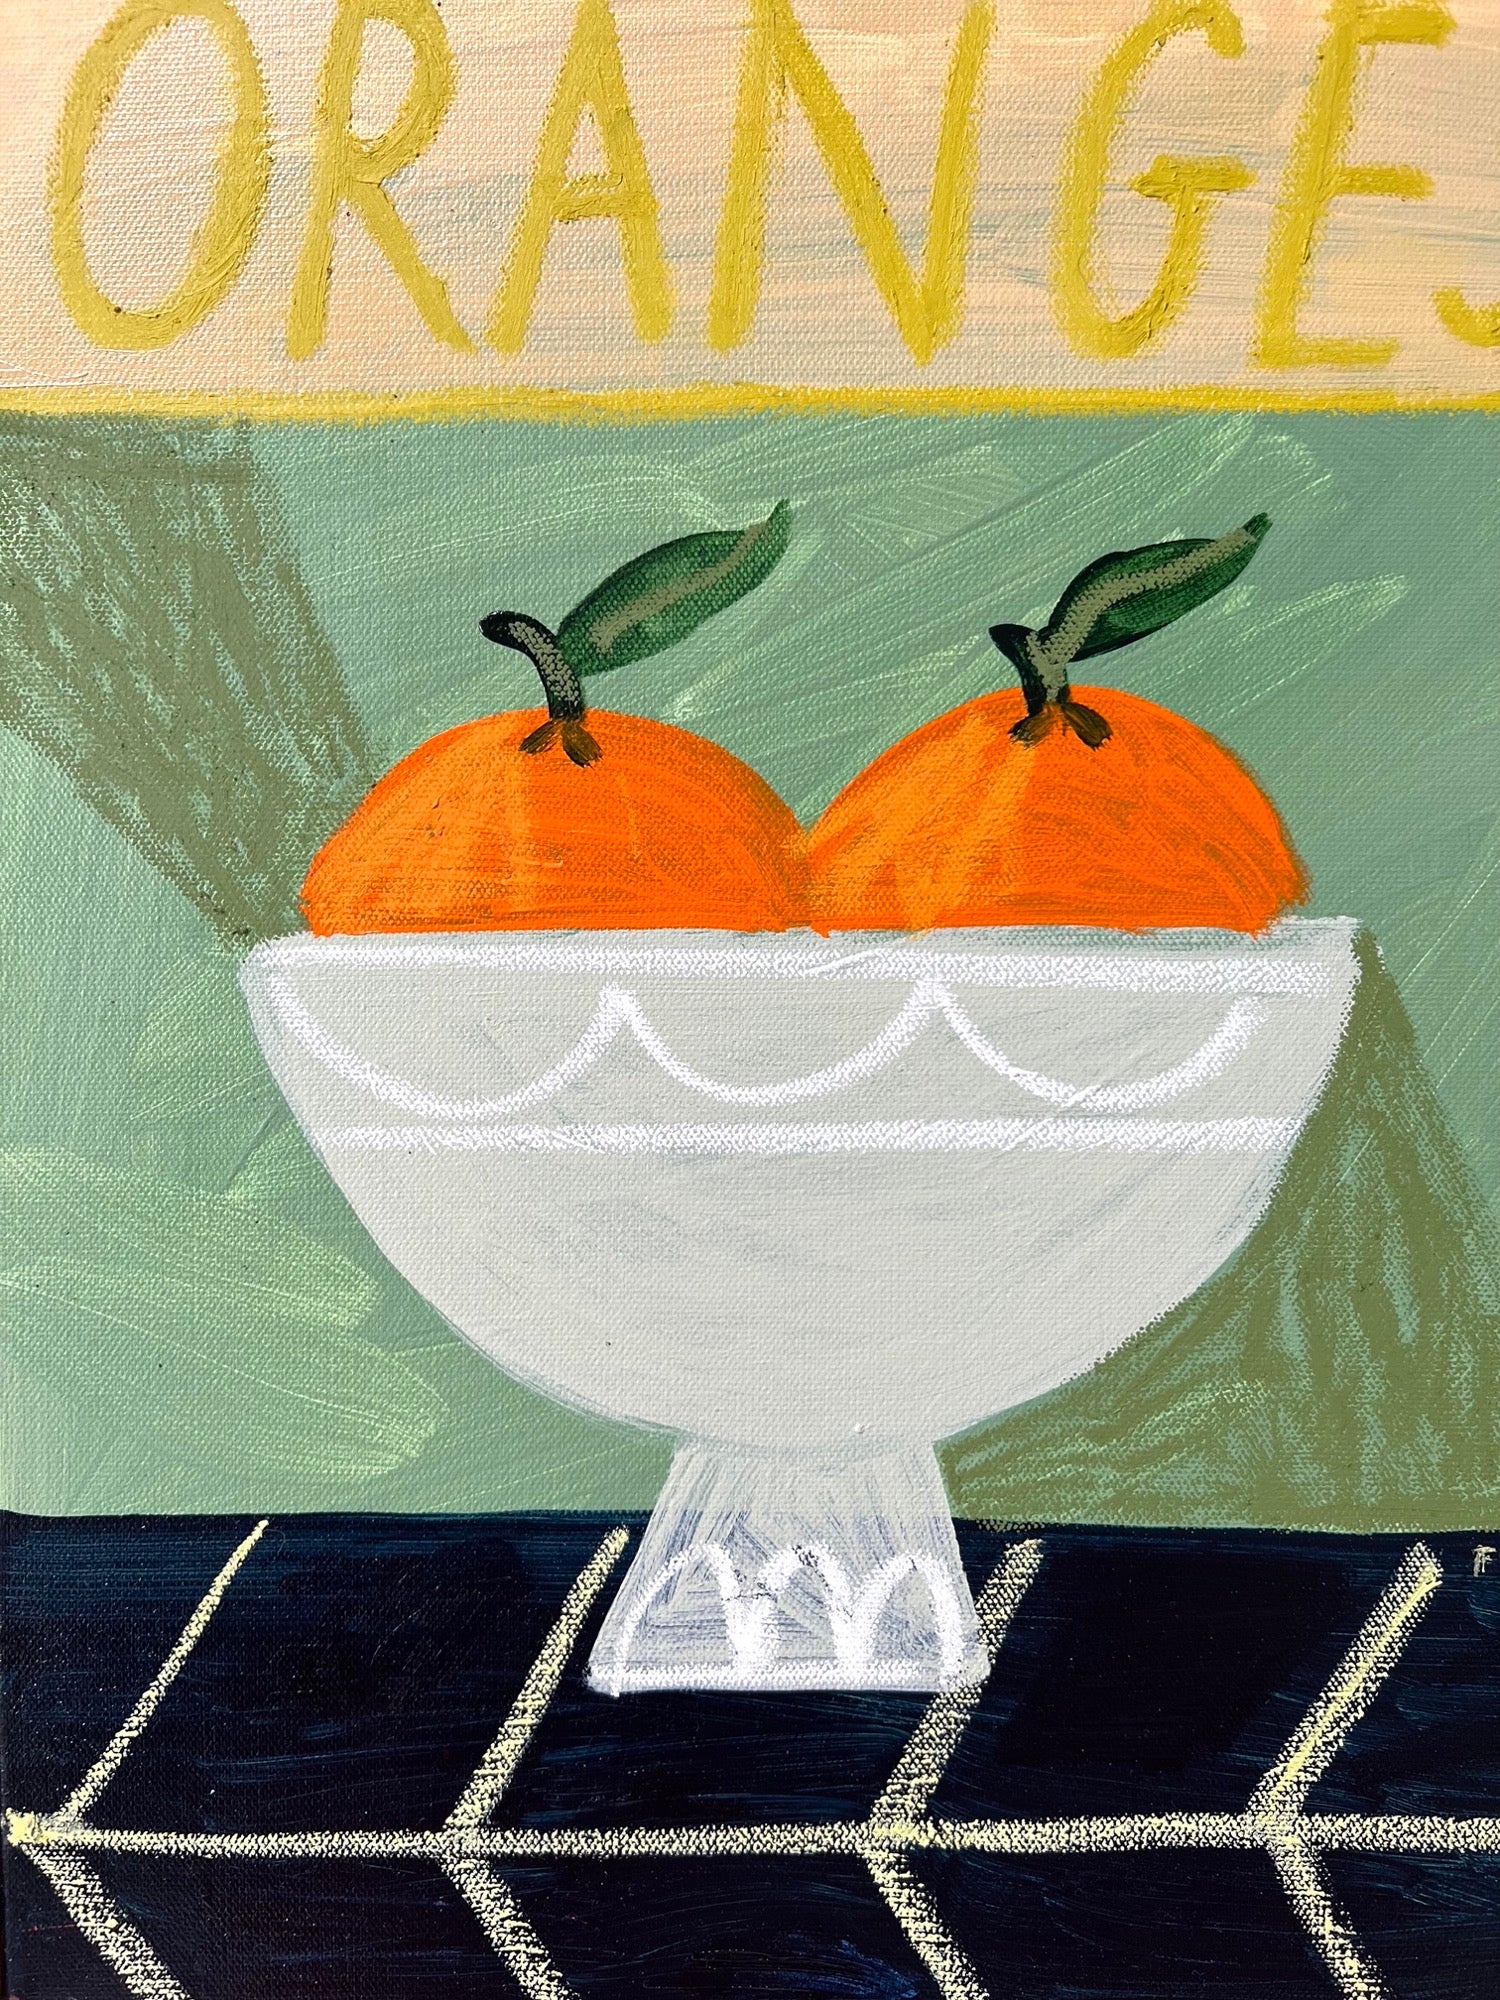 Oranges in fruit bowl